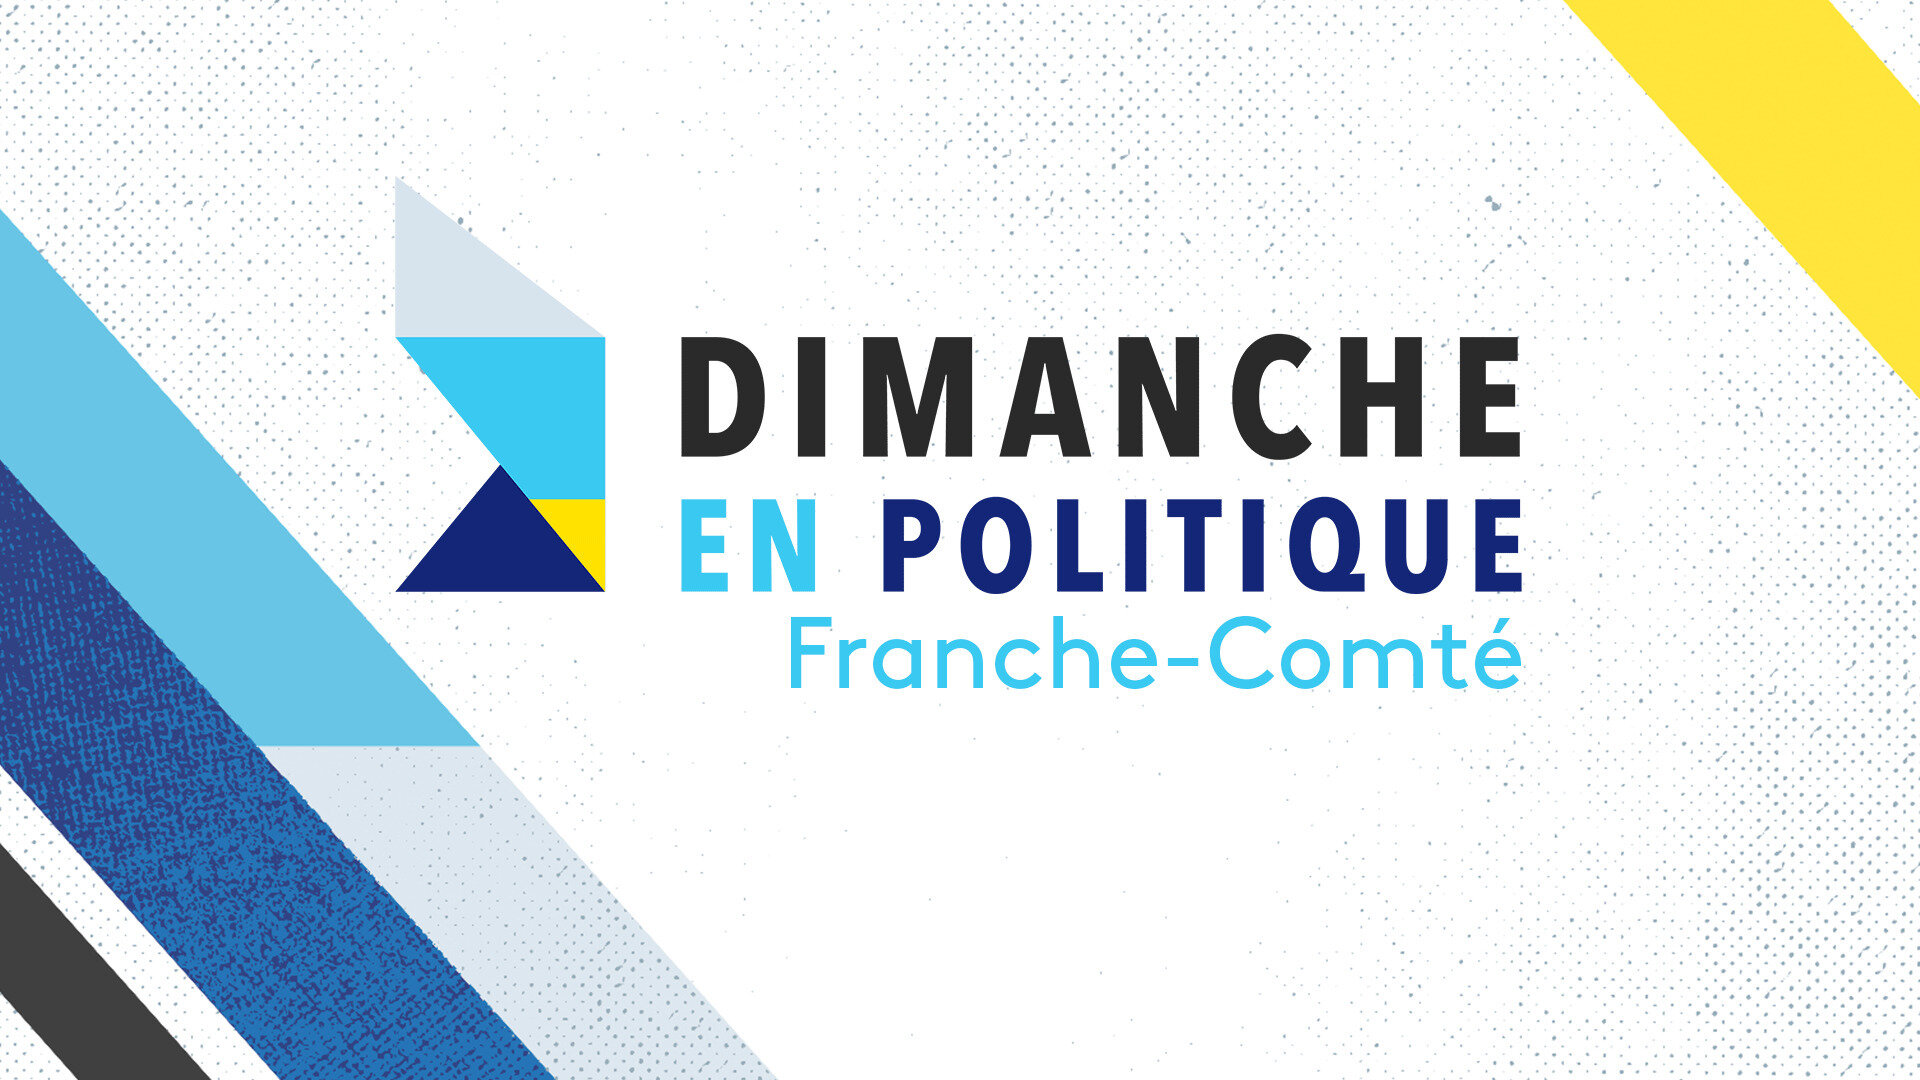 Dimanche en politique - Franche-Comté : Travail : cette valeur a-t-elle encore la cote ?